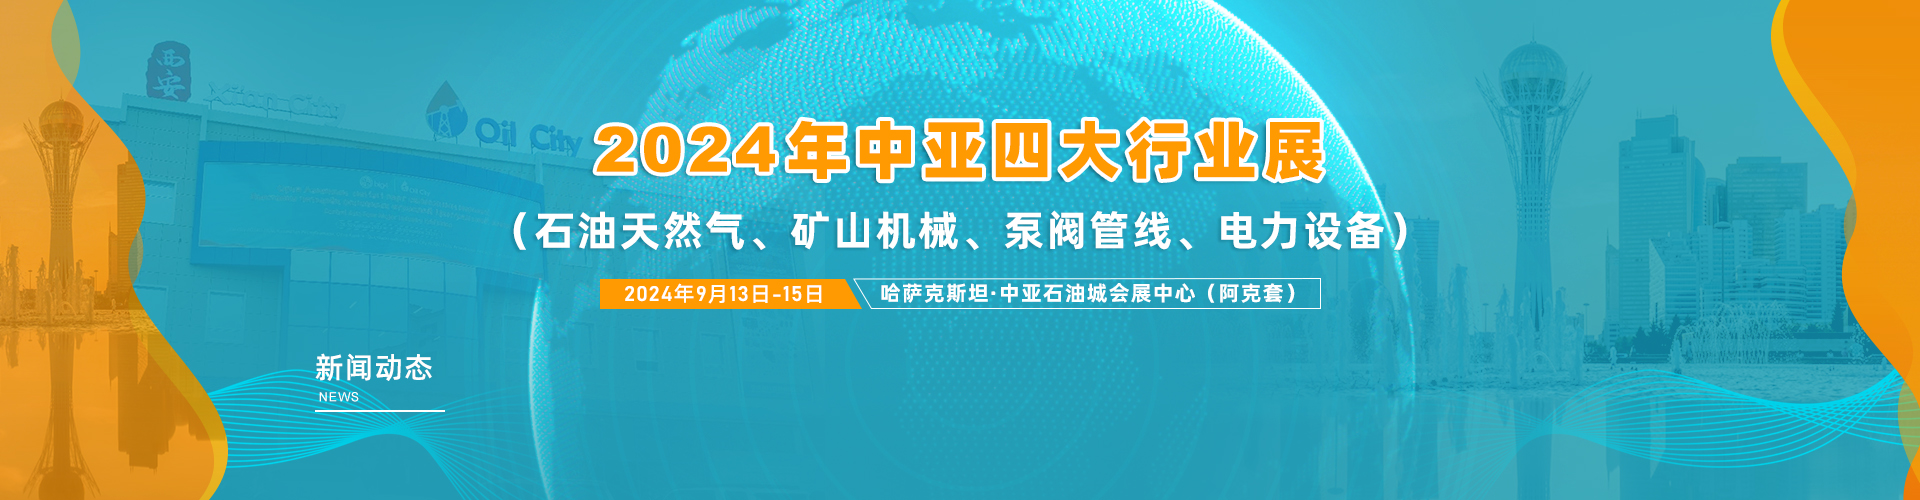 中亚四大行业展（Big4）展会新闻及行业动态内容